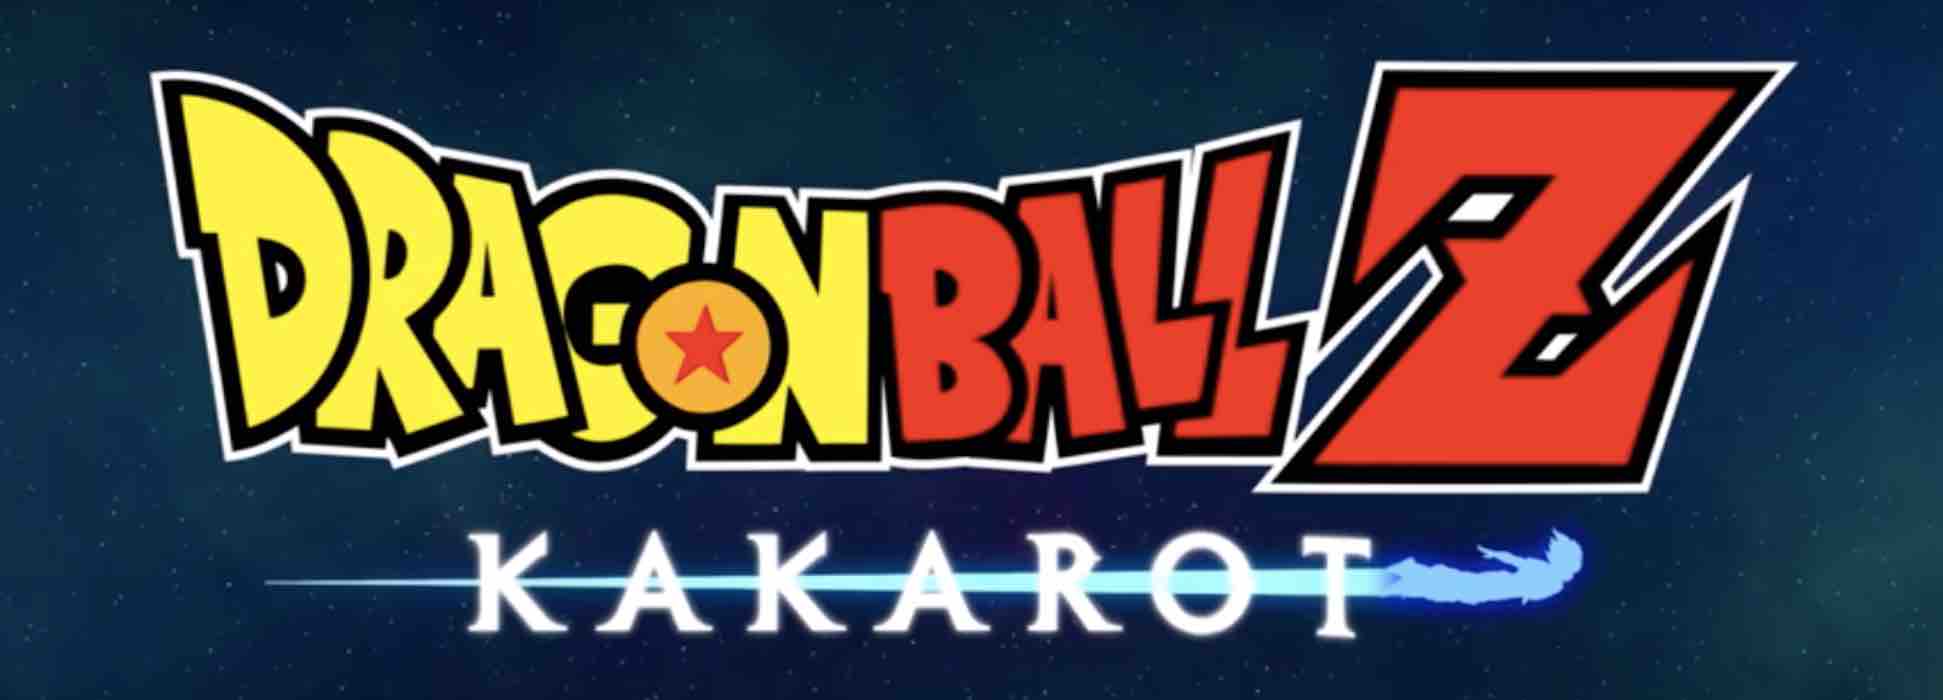 Dragon Ball Z Kakarot: la saga di Cell, arriva il trailer italiano del gioco